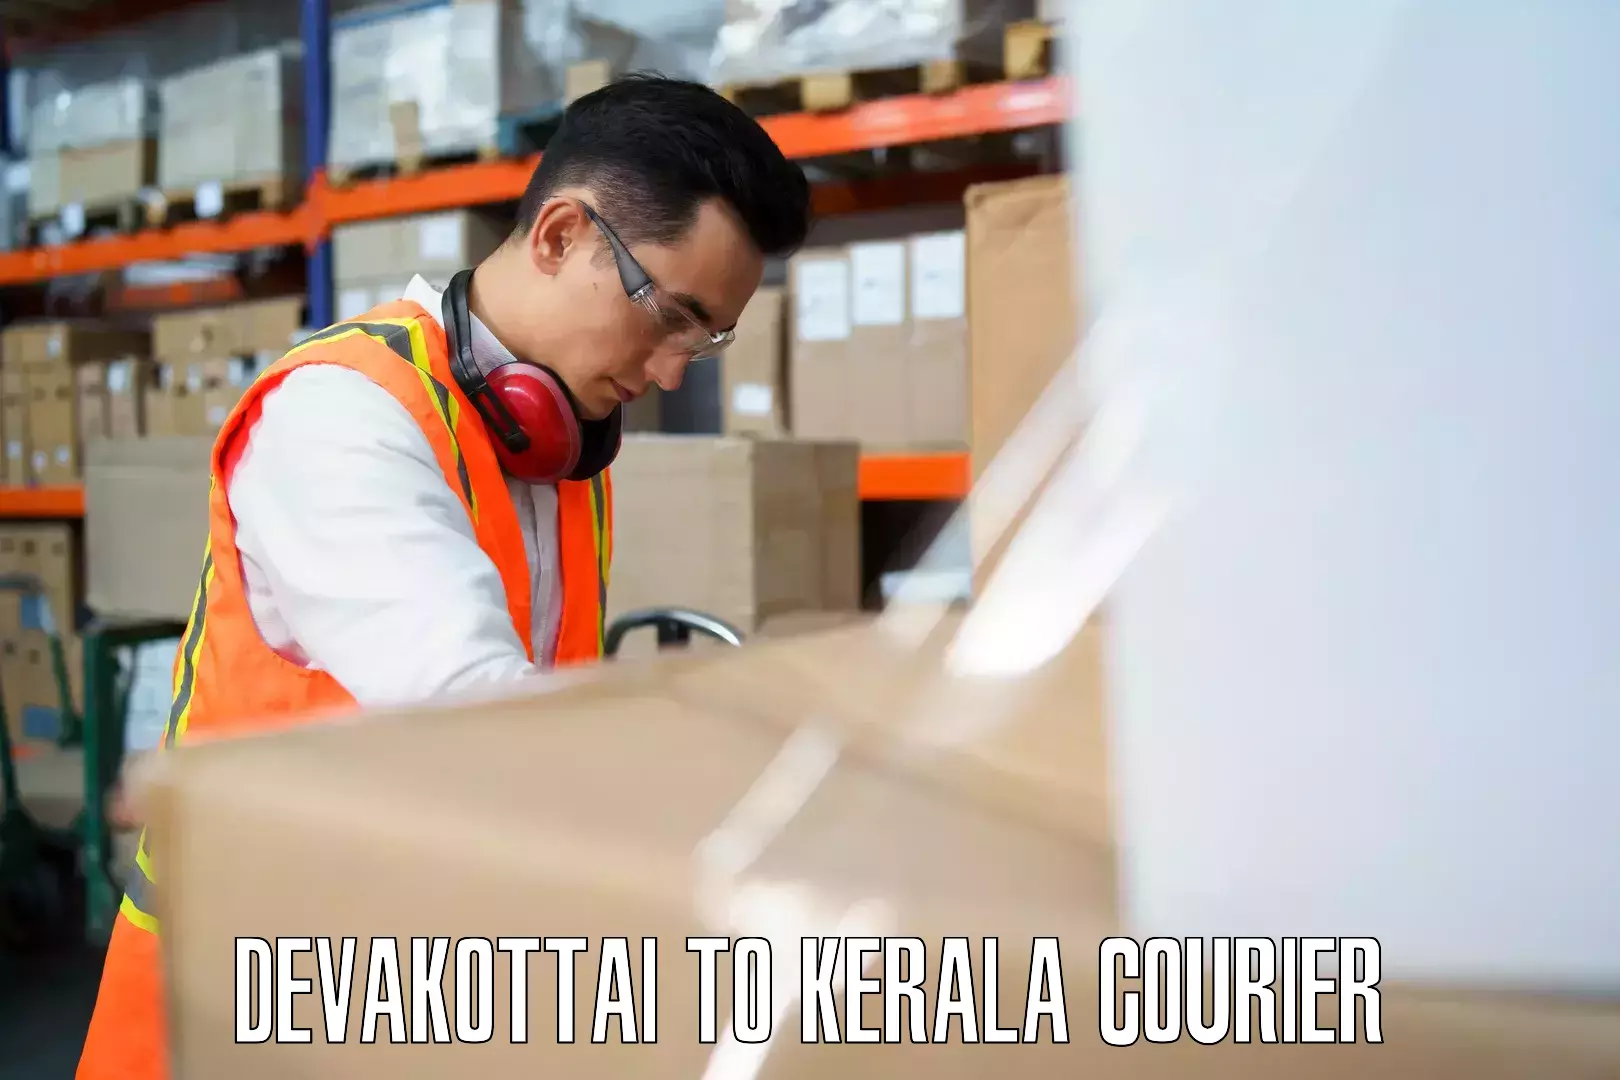 Versatile luggage courier Devakottai to Wayanad